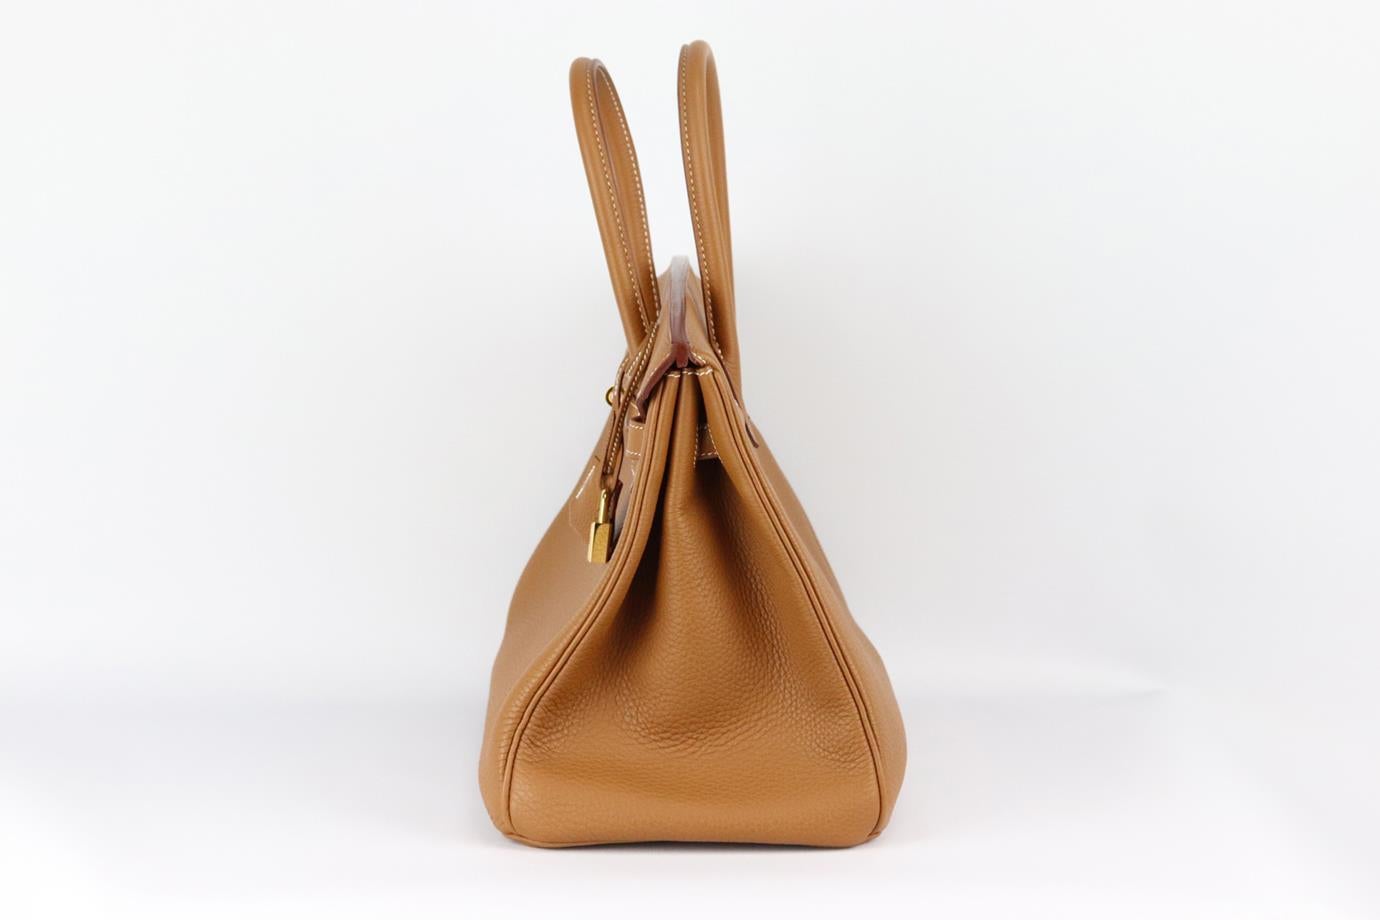 <ul>
<li>Hermès 2012 Birkin 35cm Veau Togo sac en cuir.</li>
<li>Fabriqué en France, ce magnifique sac à main Hermès 'Birkin' 2012 a été réalisé en cuir Veau Togo de couleur havane avec un intérieur en cuir assorti. Il est décoré de ferrures de